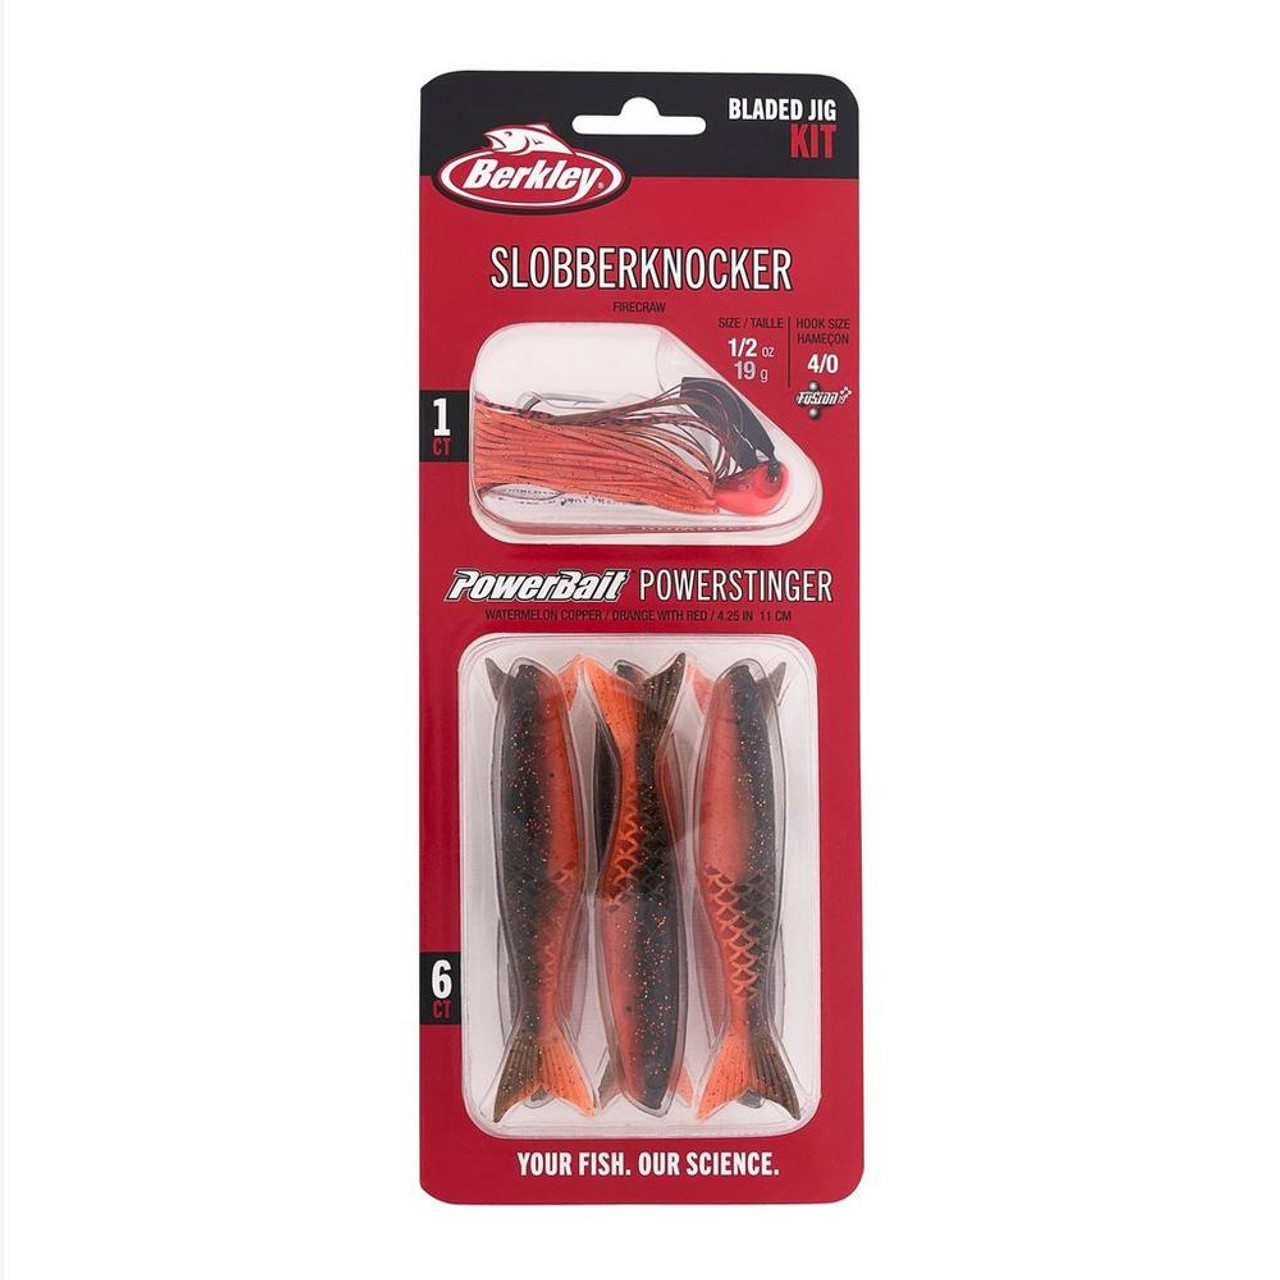 Berkley Slobberknocker and PowerStinger Kit - Fire Craw